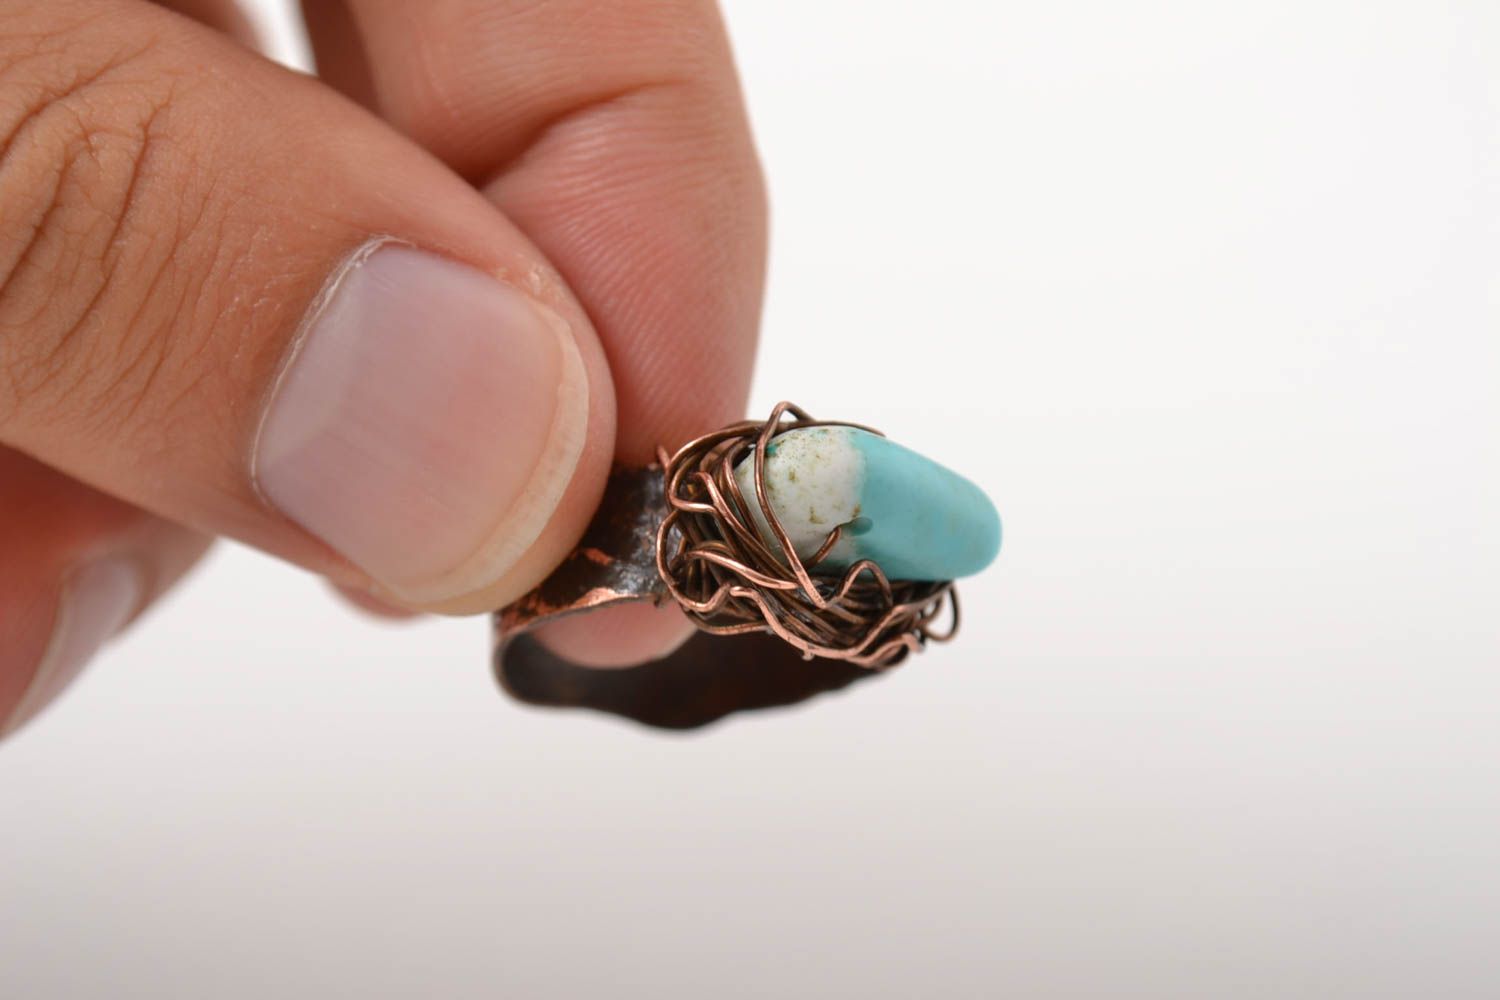 Красивое кольцо хэнд мэйд украшение в технике wire wrap медное кольцо с бирюзой фото 2